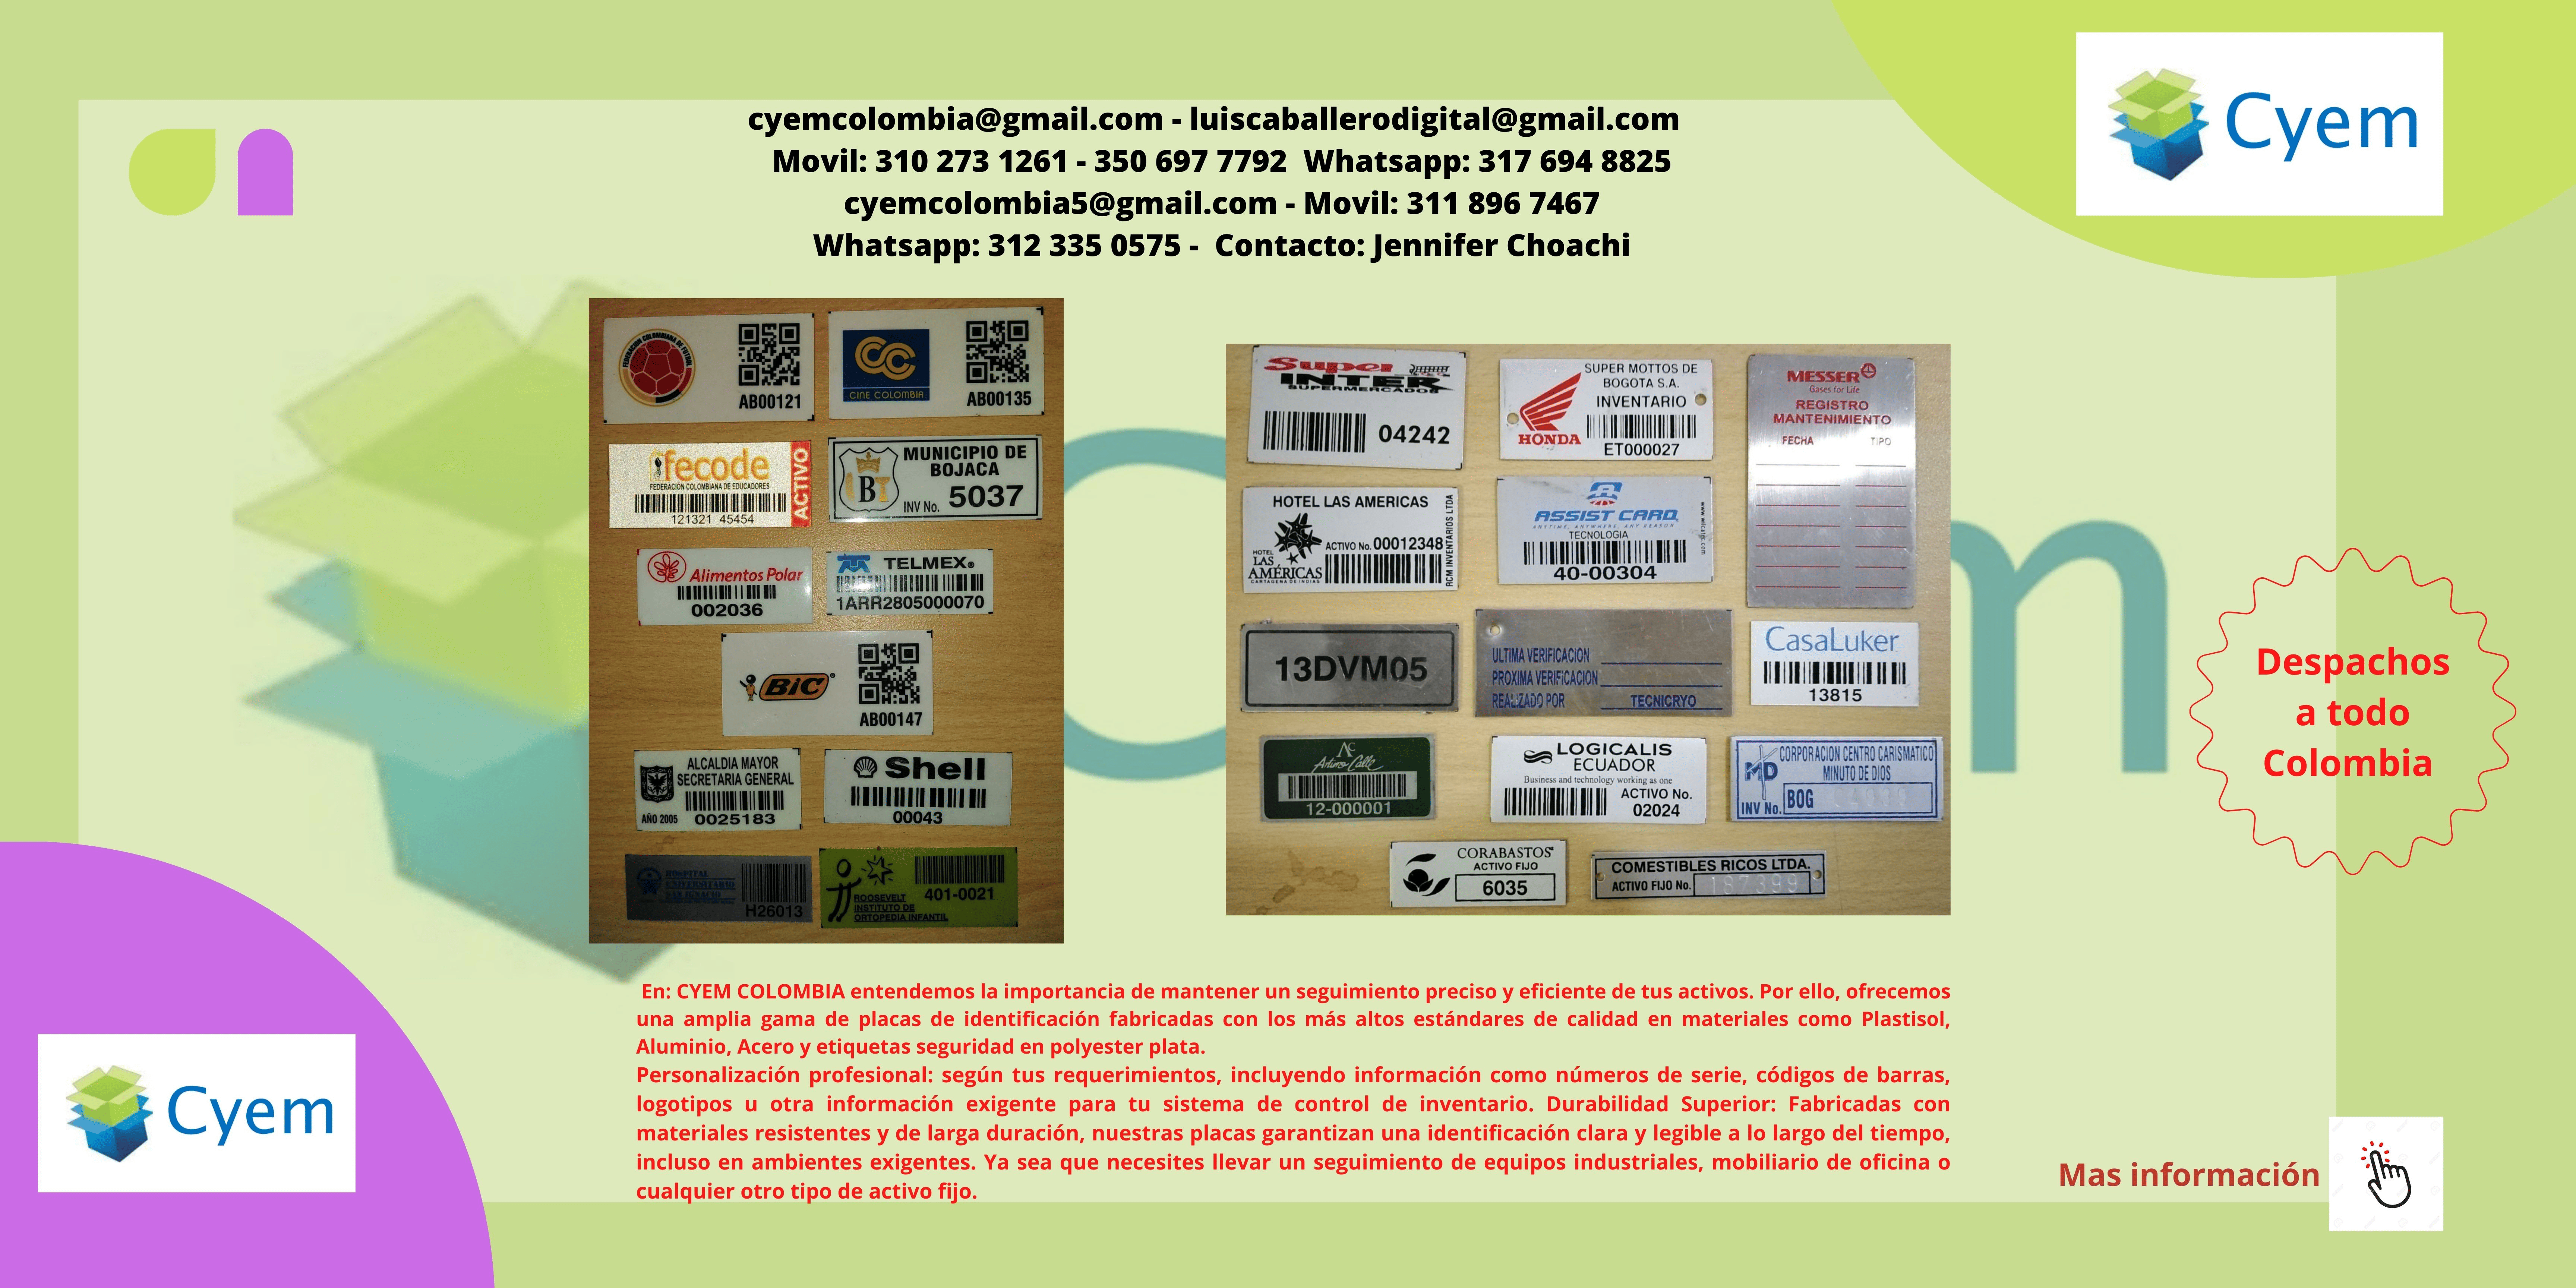 Placas y etiquetas de seguridad para control de inventarios